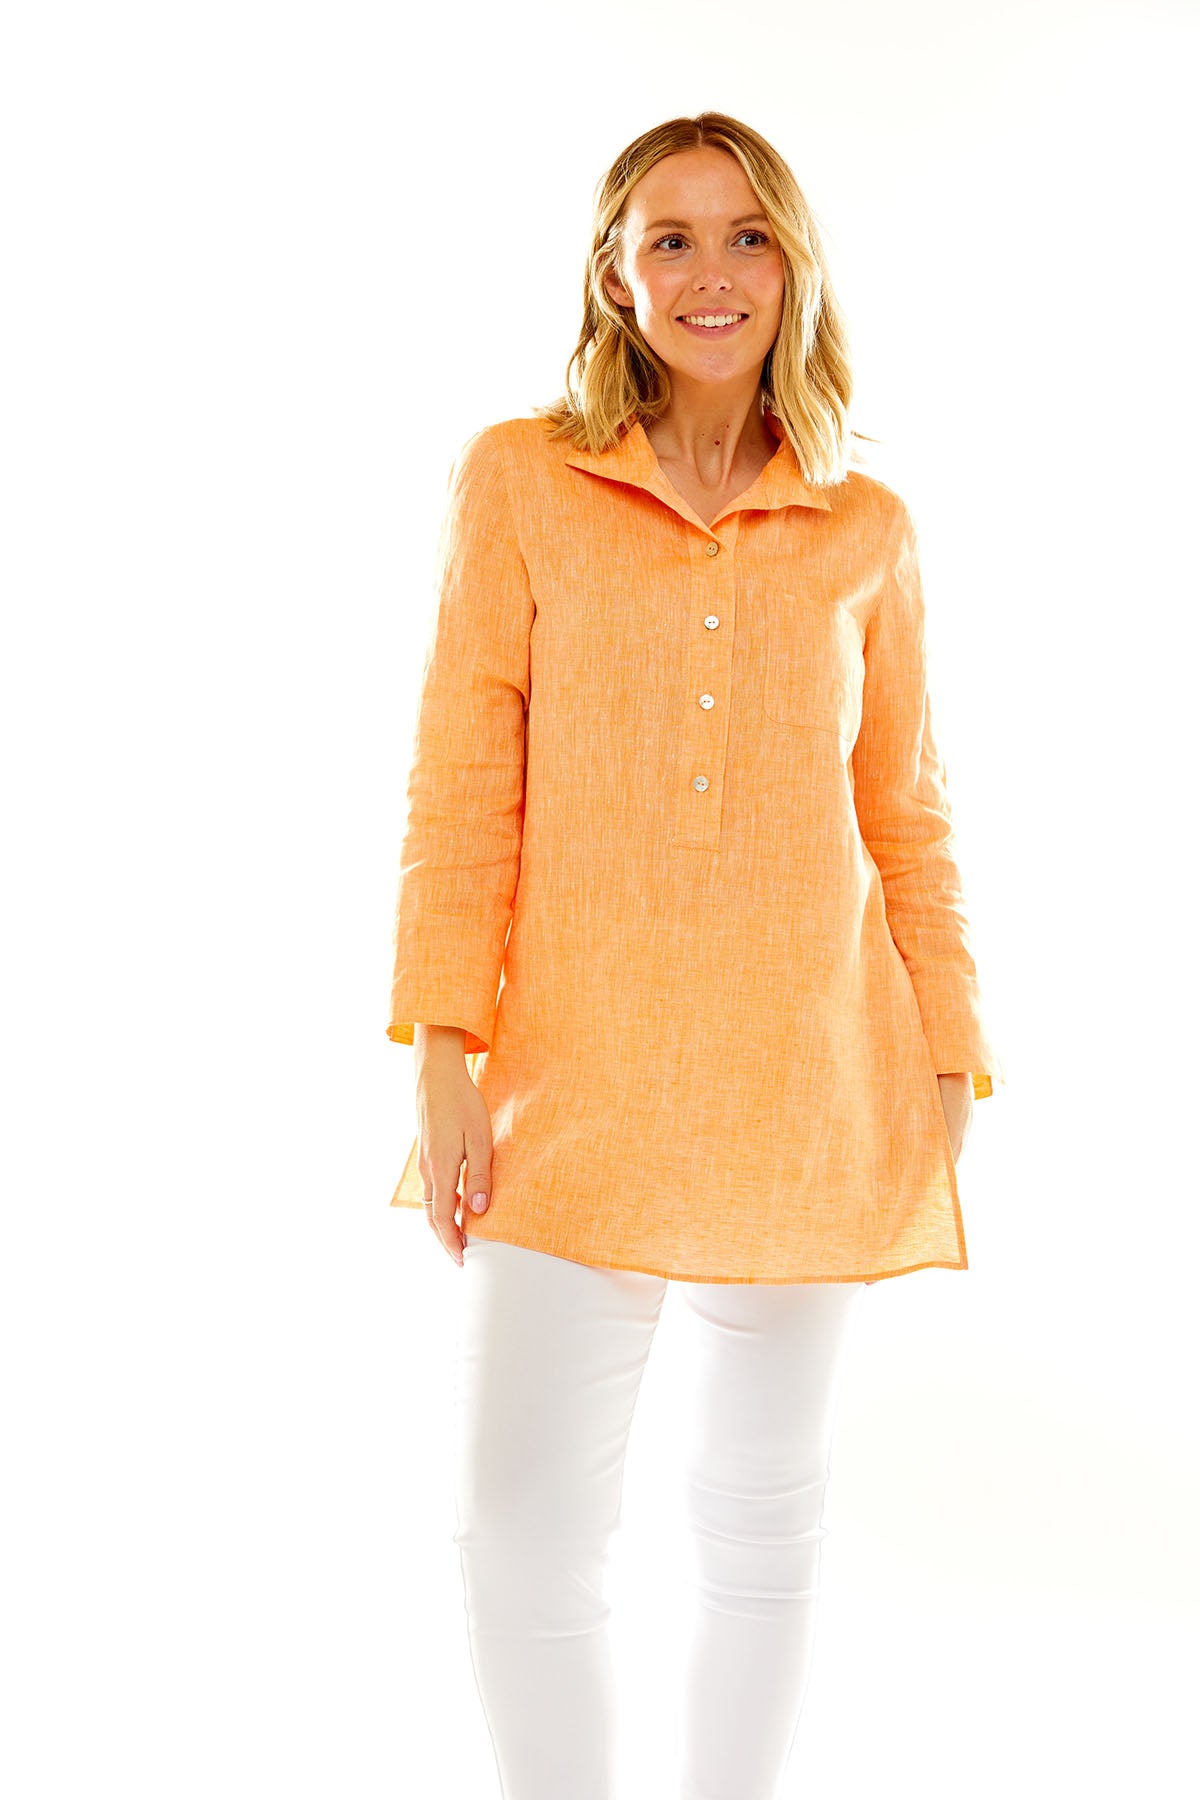 Woman in orange tunic